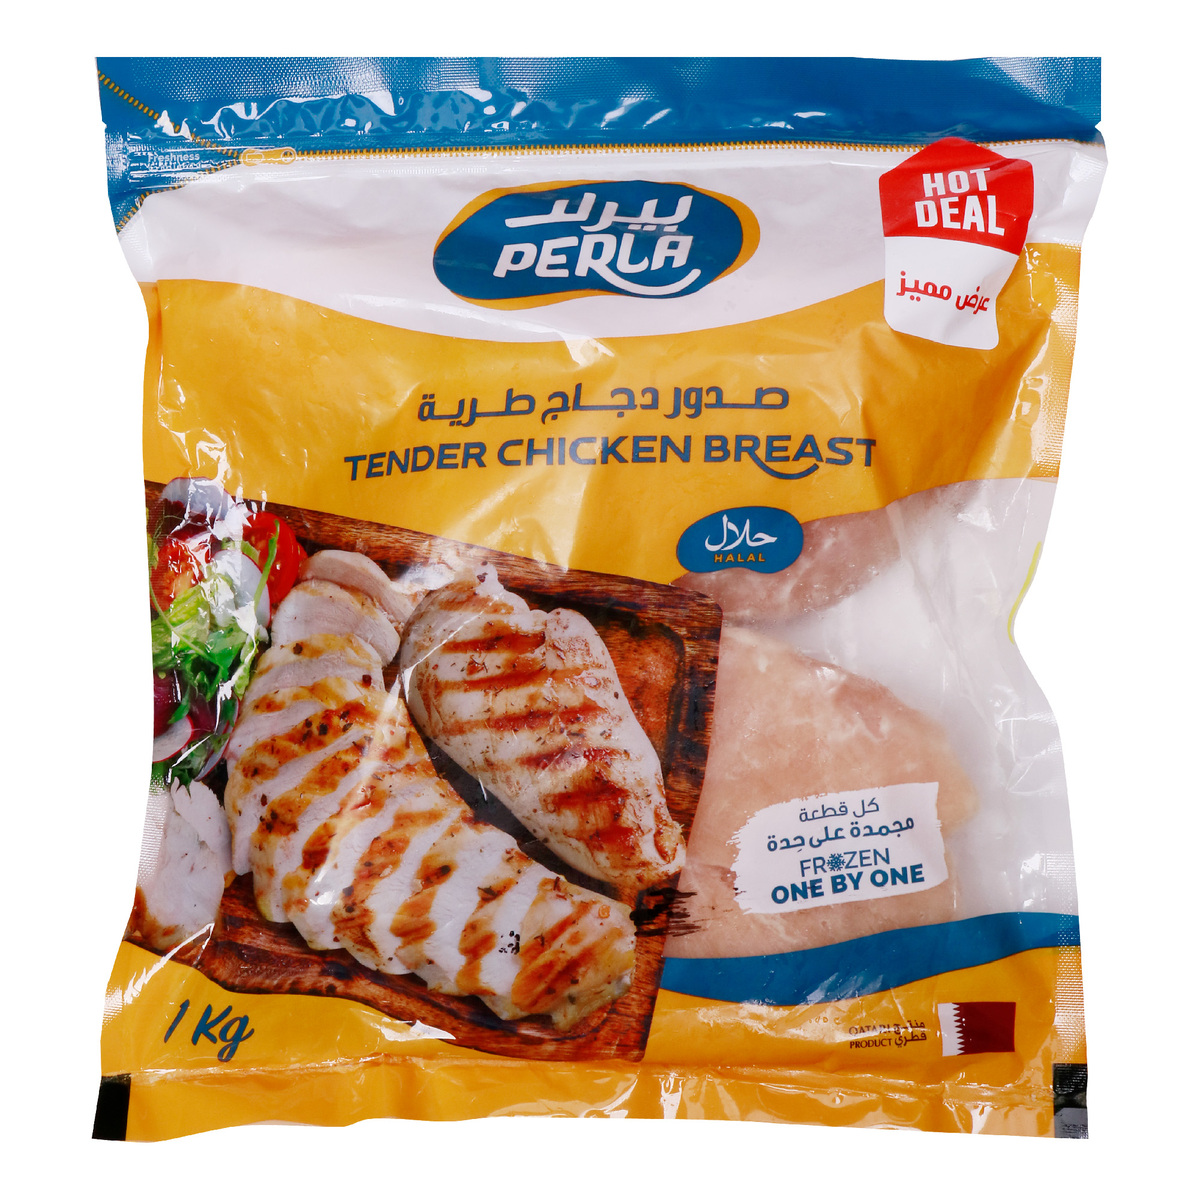 Perla Tender Chicken Breast 1kg